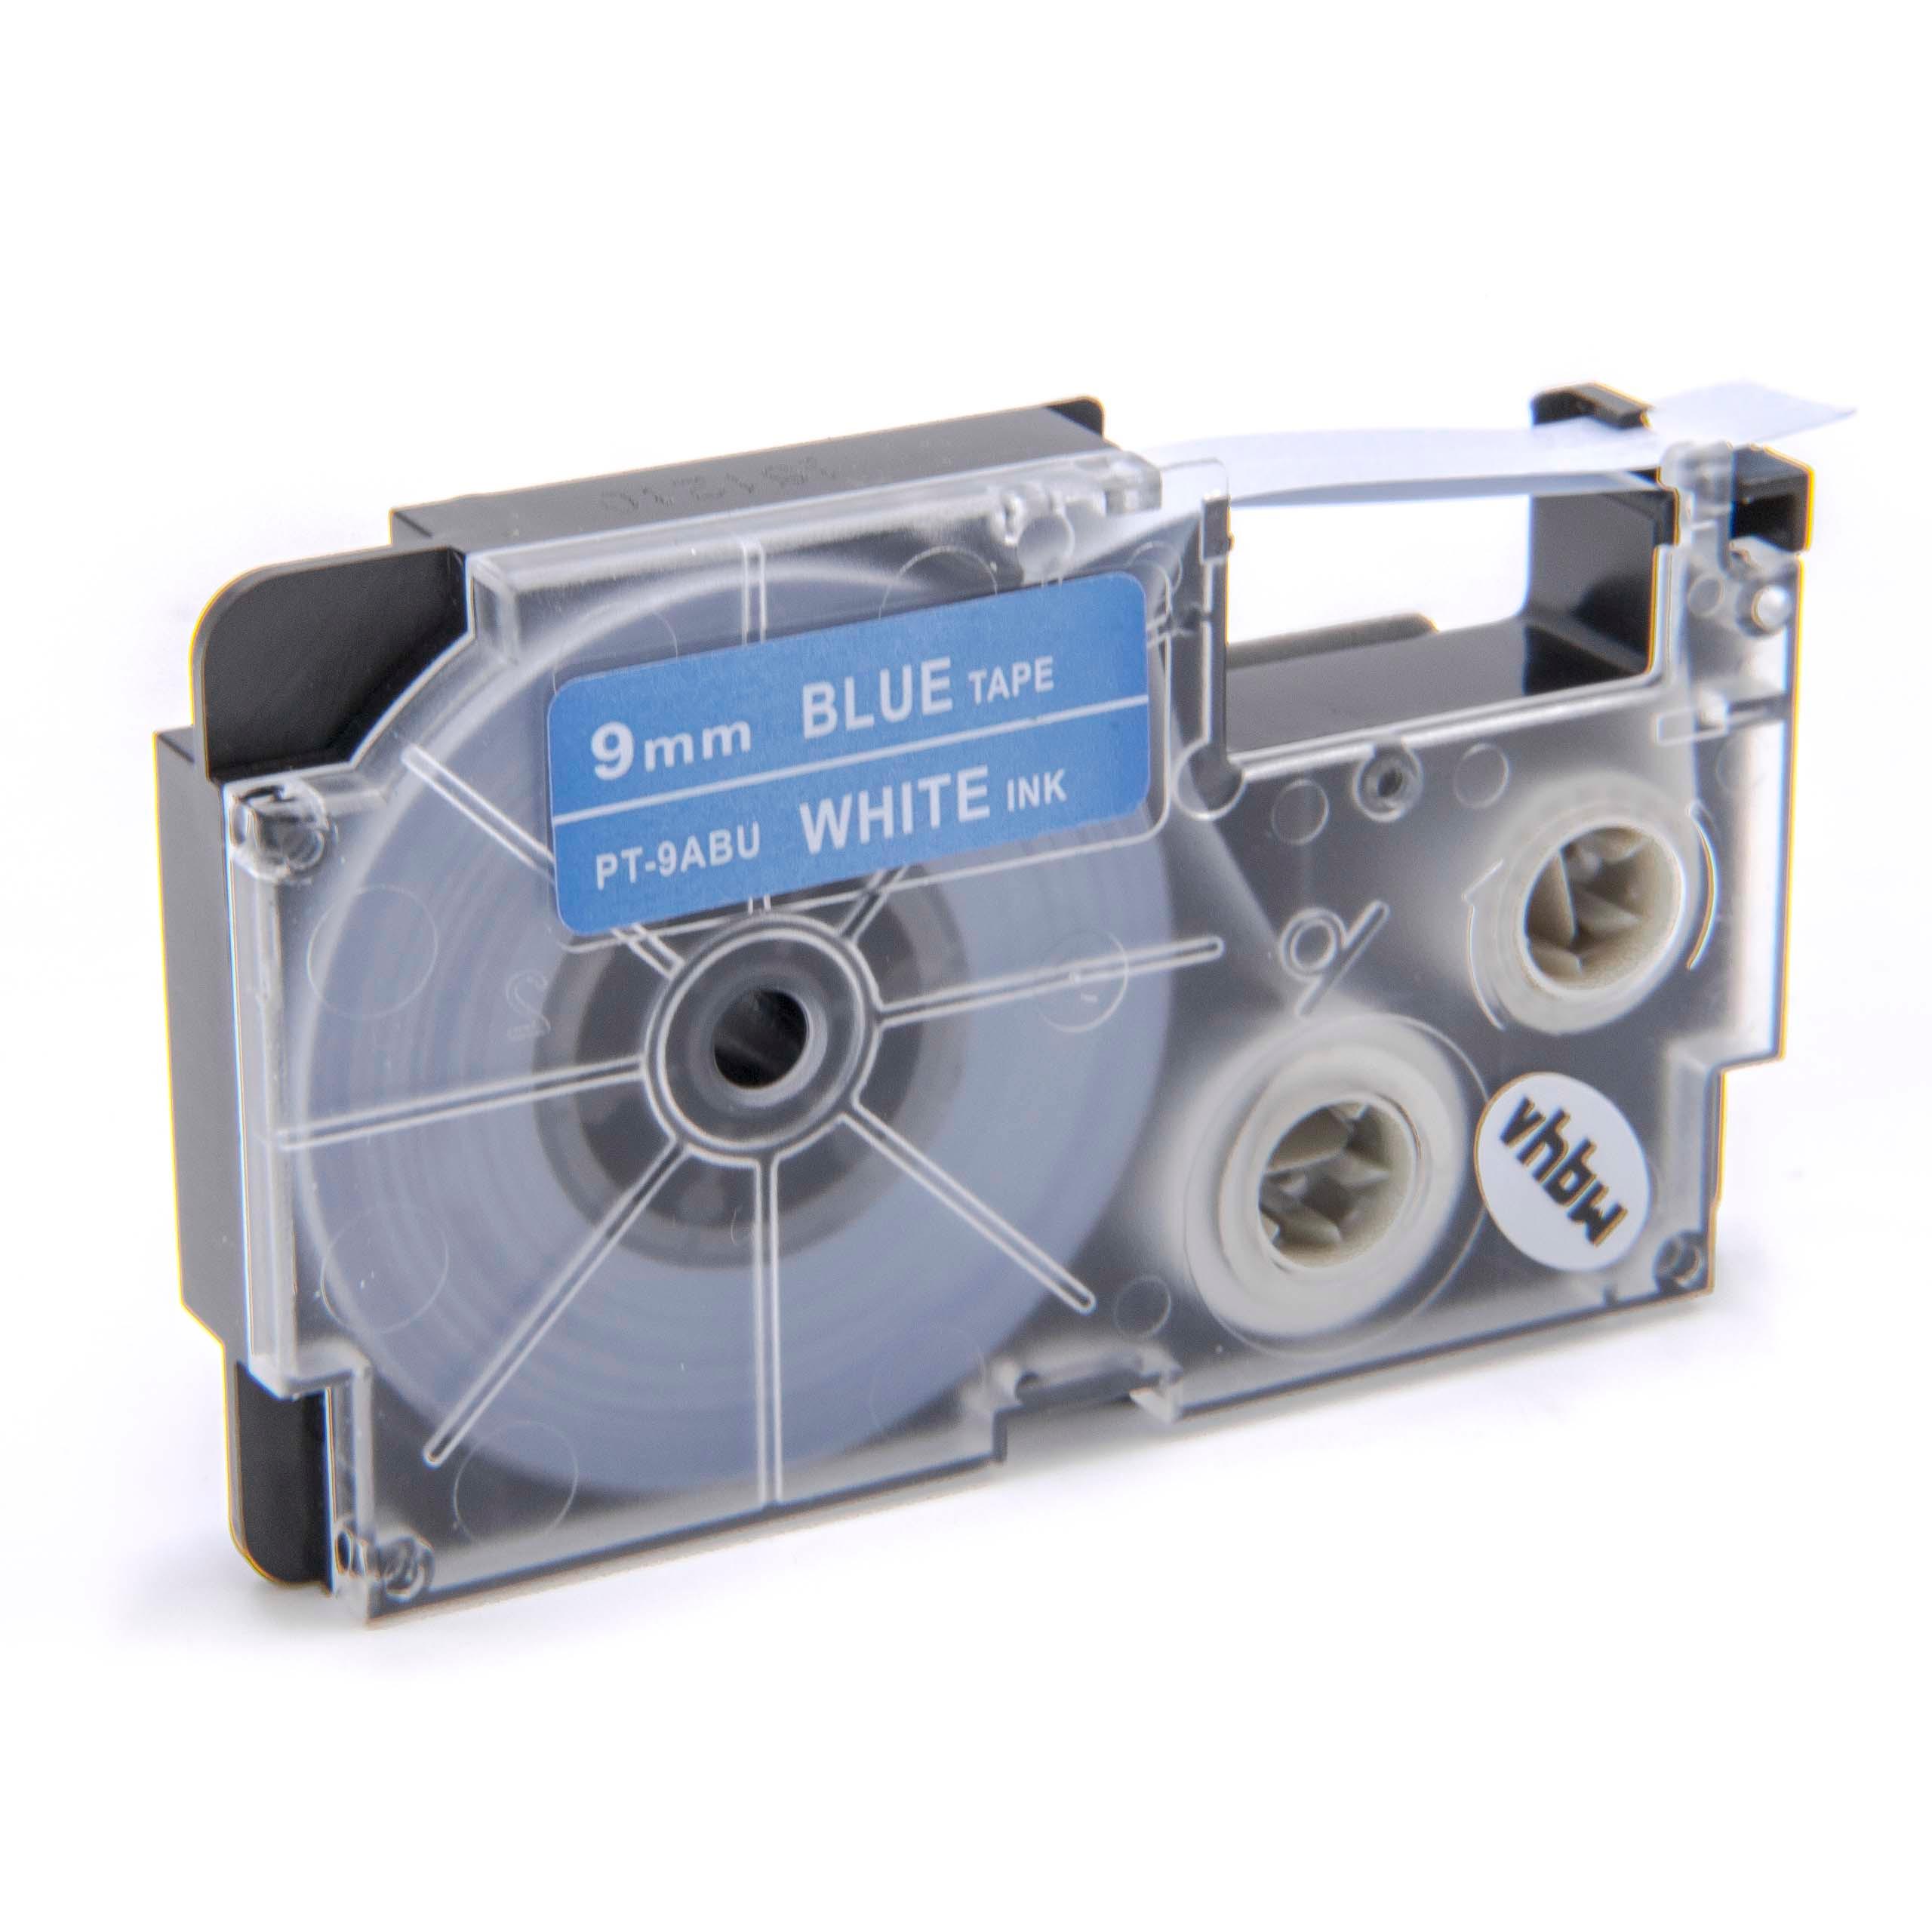 Cassetta nastro sostituisce Casio XR-9ABU per etichettatrice Casio 9mm bianco su blu